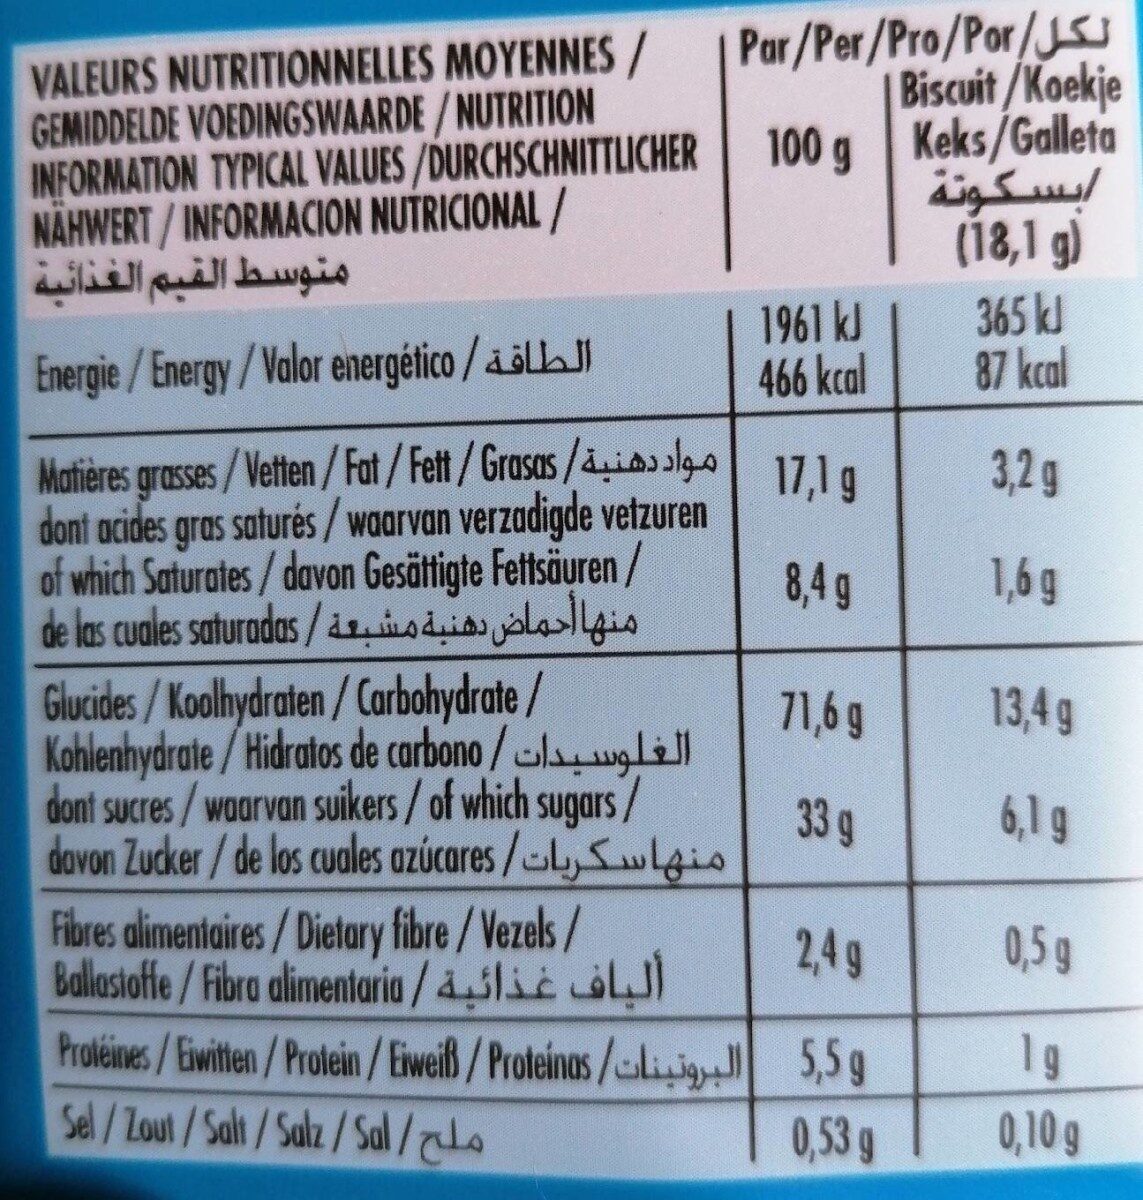 Biscuits fourrés goût vanille - Nutrition facts - fr